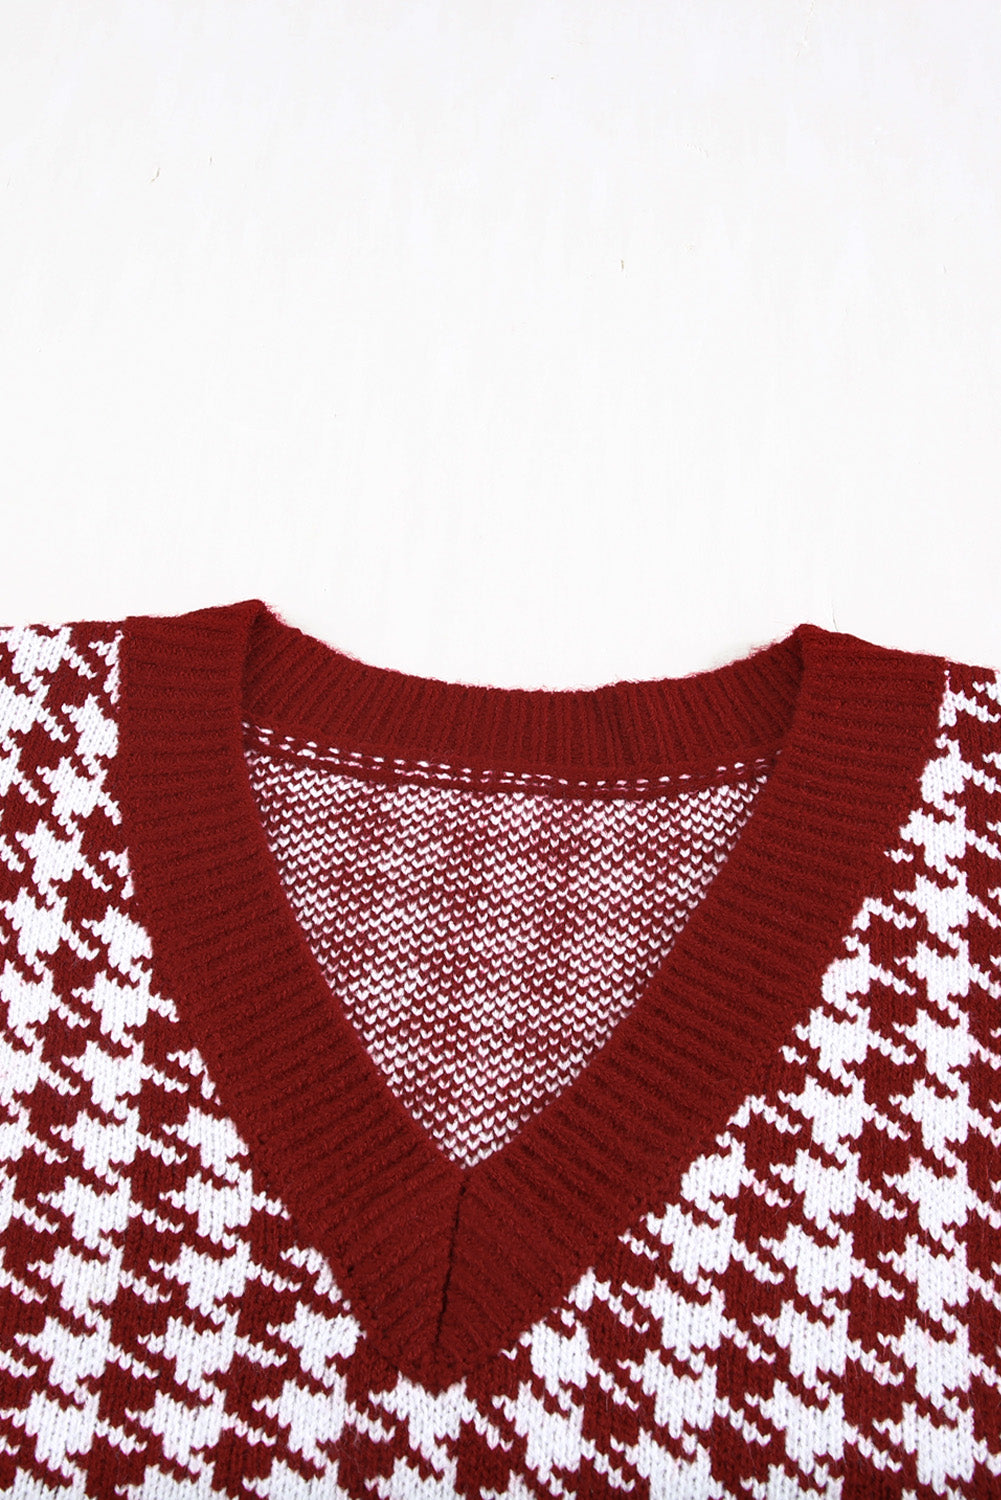 V Neck Argyle Plaid Knitted Sweater Vest